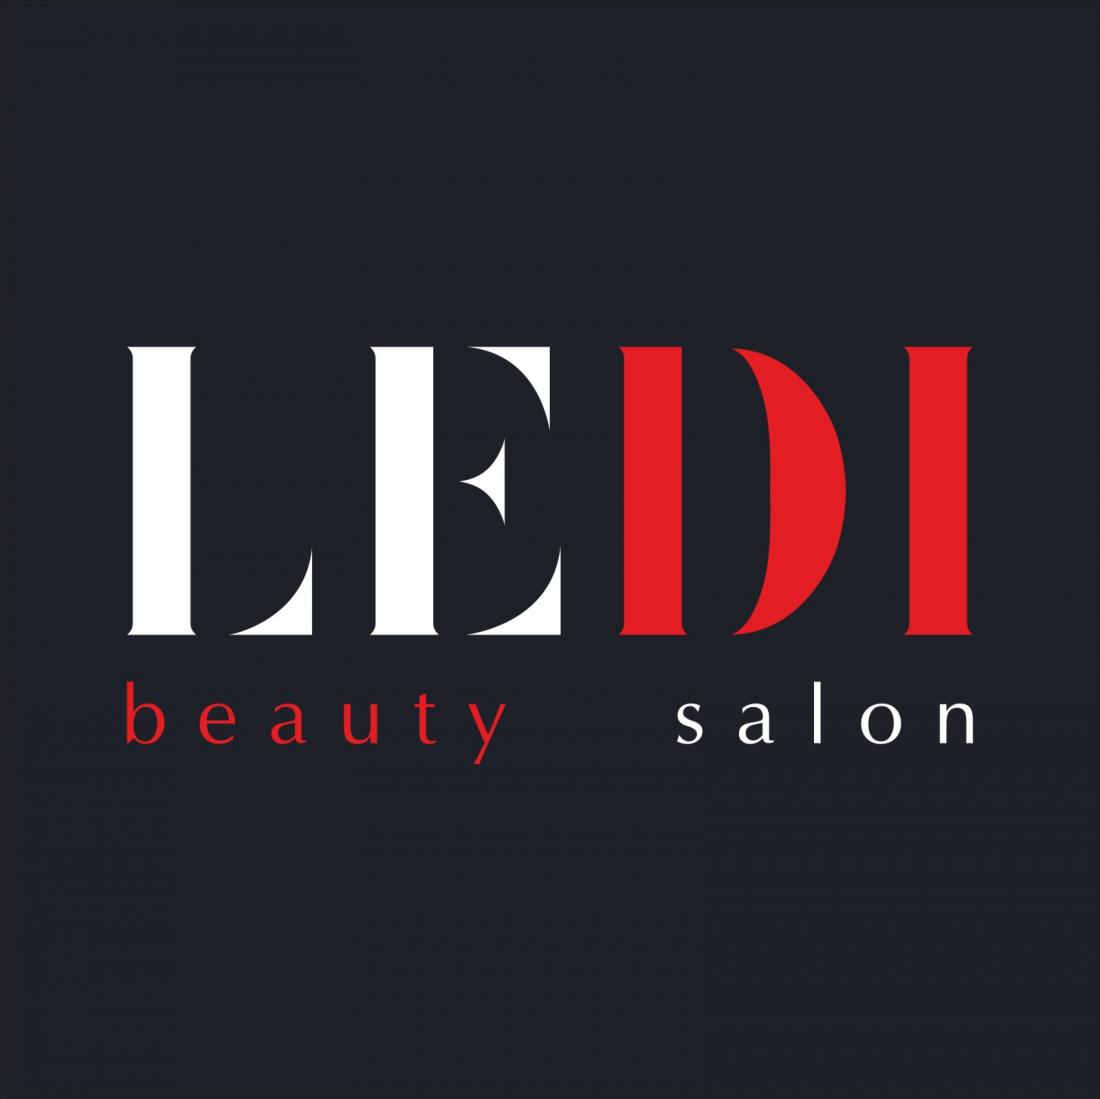 Аппаратное удаление волос для женщин и мужчин от 1 р. в салоне красоты "Ledi" в Гомеле